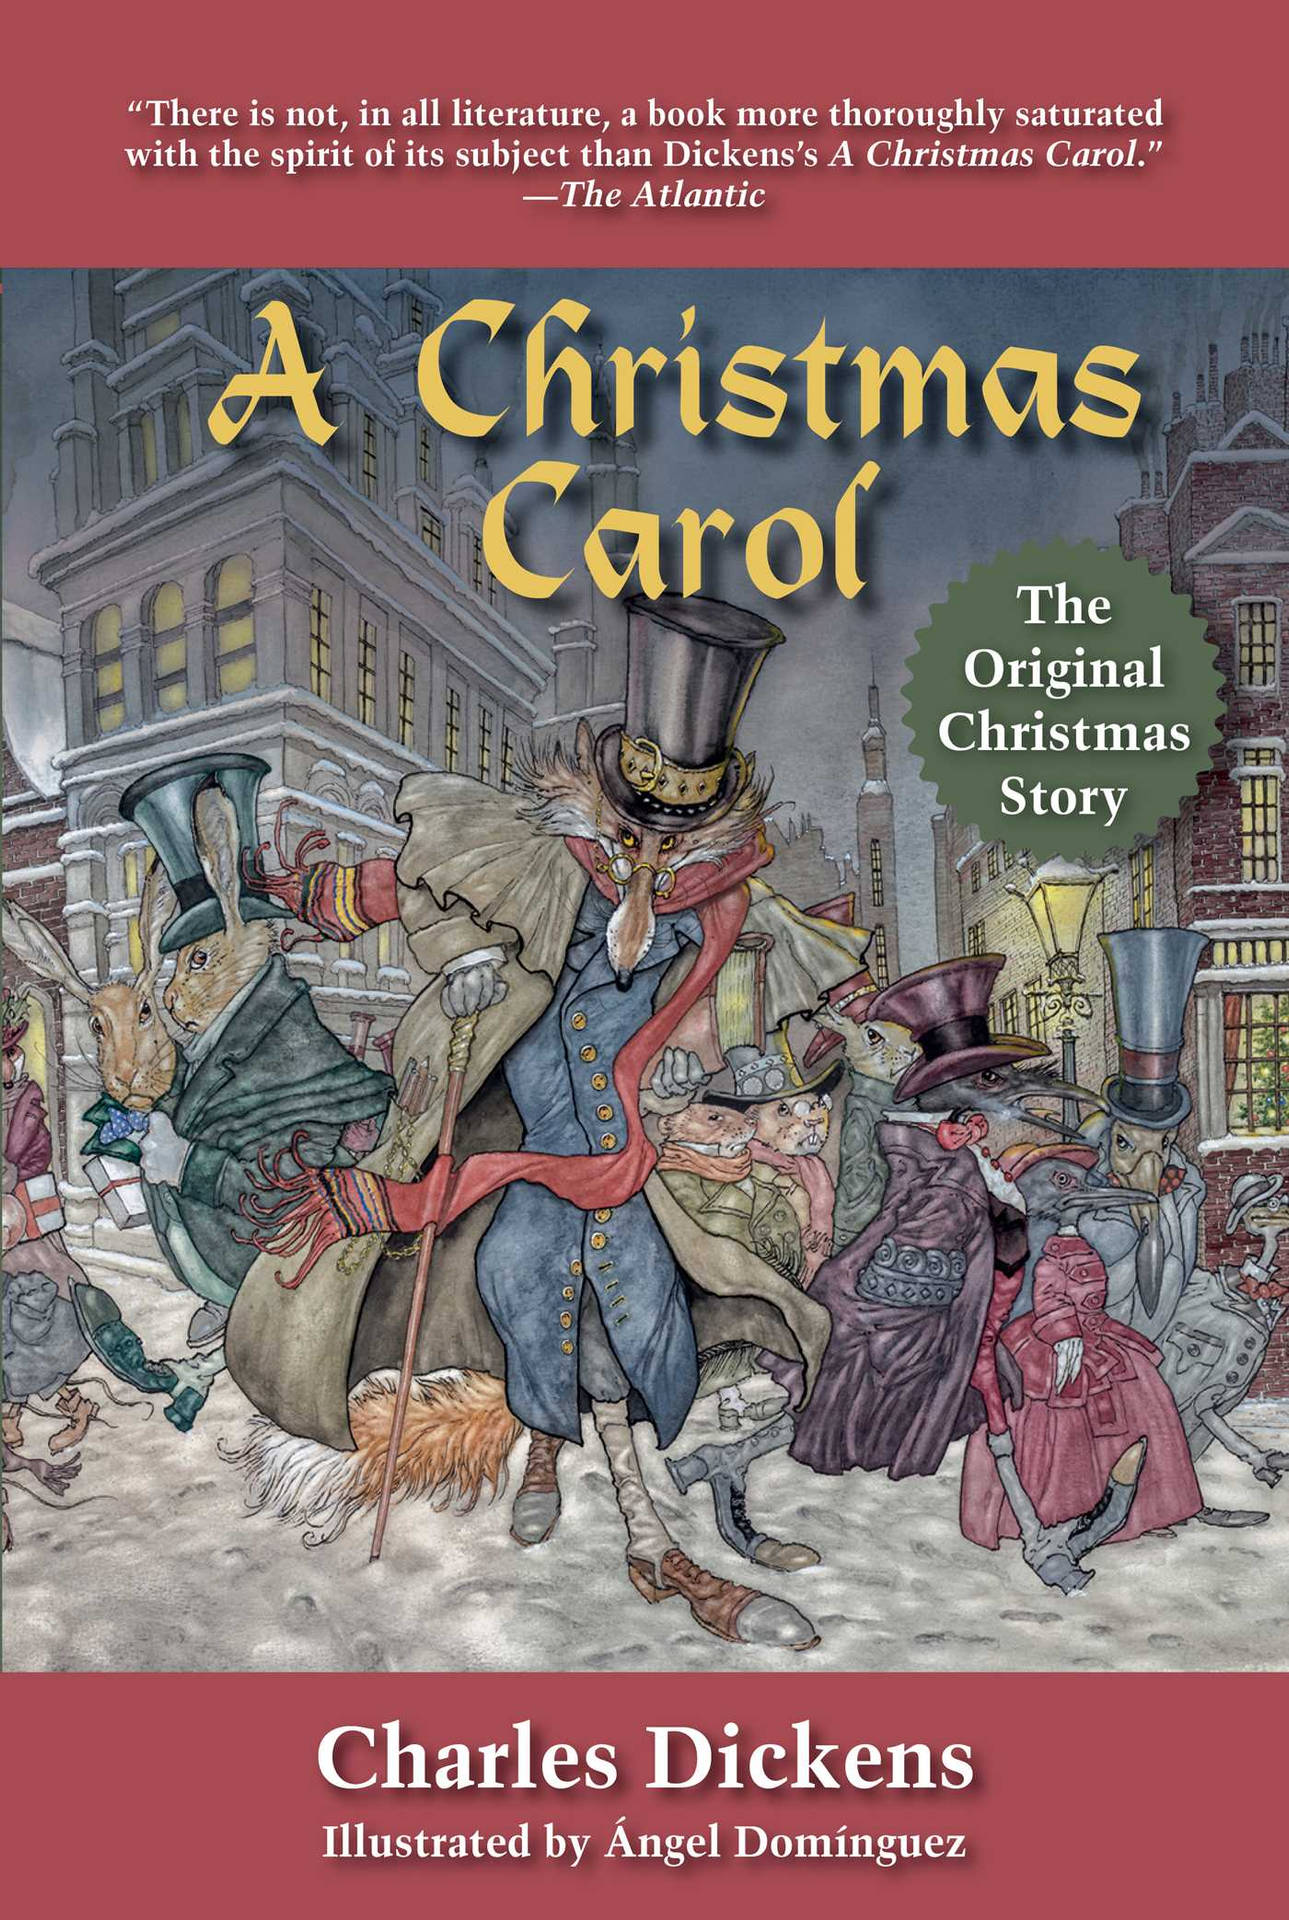 A Christmas Carol Book Cover Background